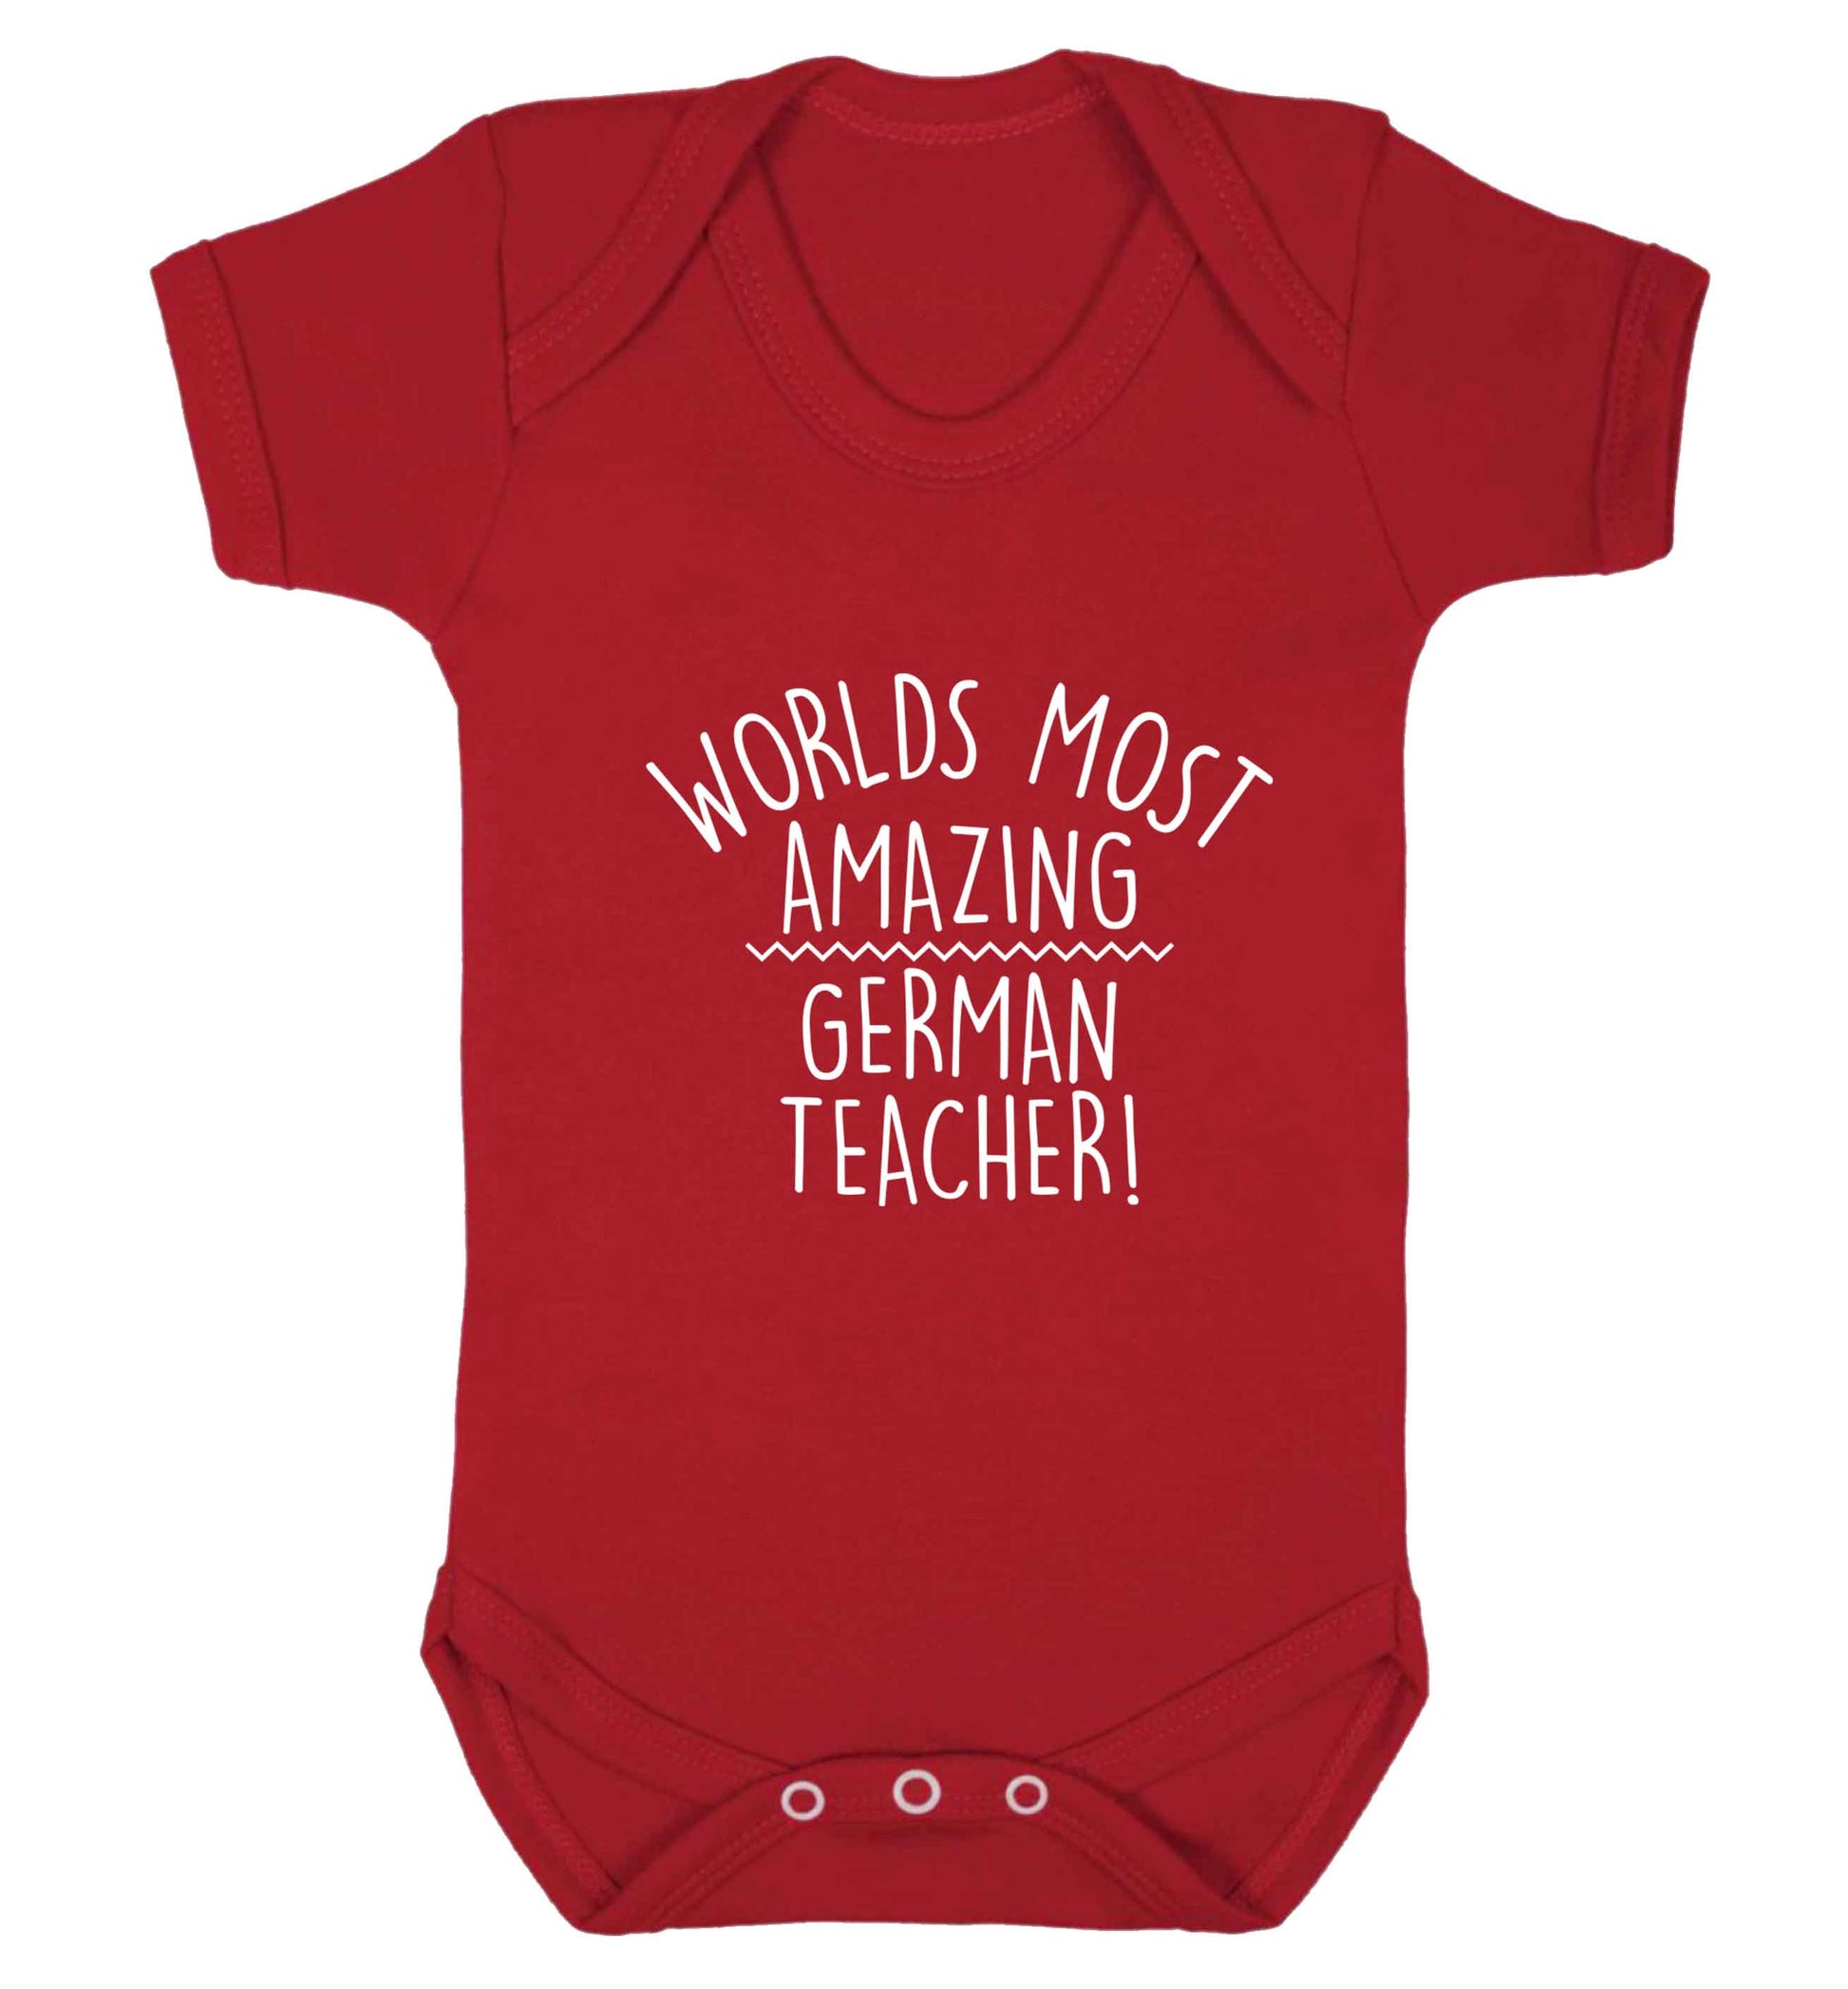 Worlds most amazing German teacher baby vest red 18-24 months